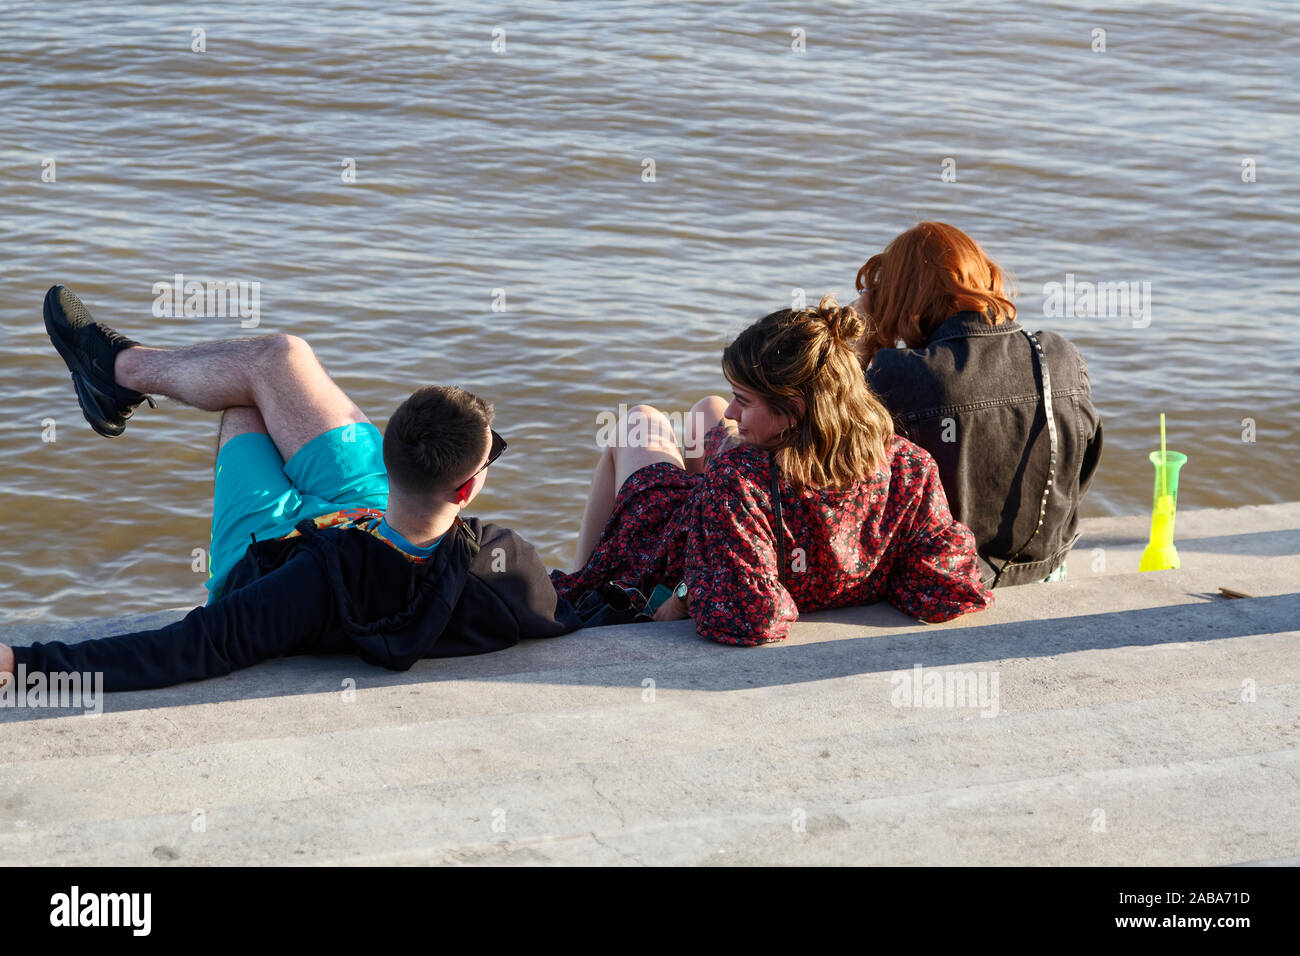 3 Personen sitzend durch Wasser, Reden, neon daiquiri Glas, Freunde, Moonwalk, Mississippi, New Orleans, LA, USA, Herbst; horizontal Stockfoto